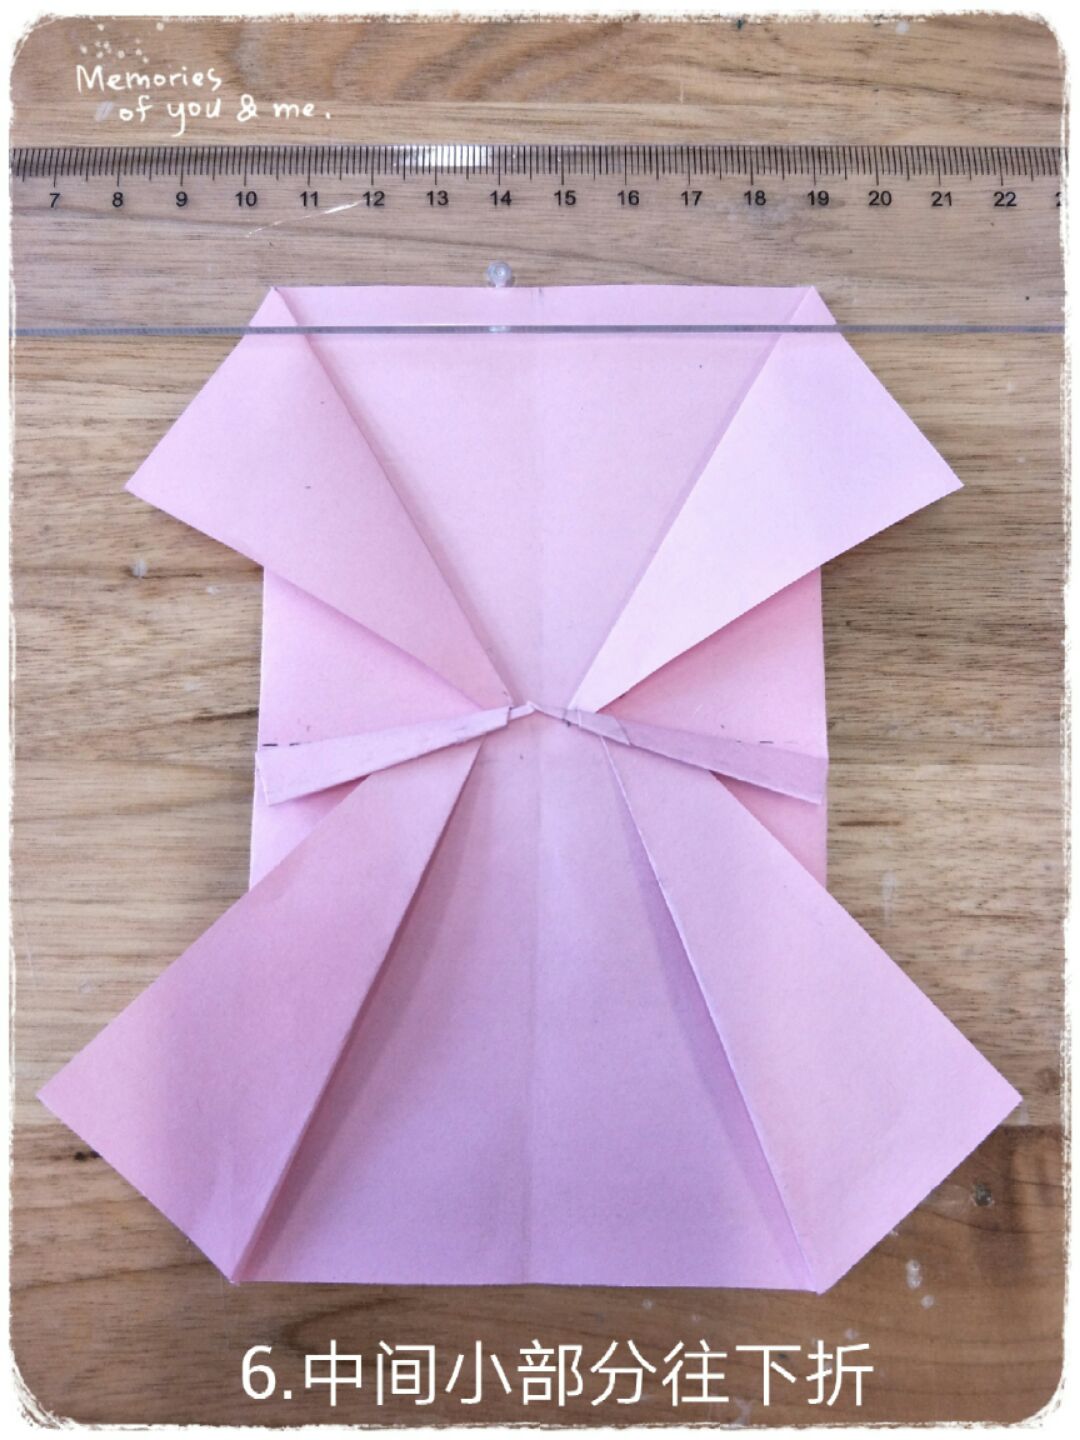 手工折纸DIY 《灰姑娘公主裙》折法图解教程